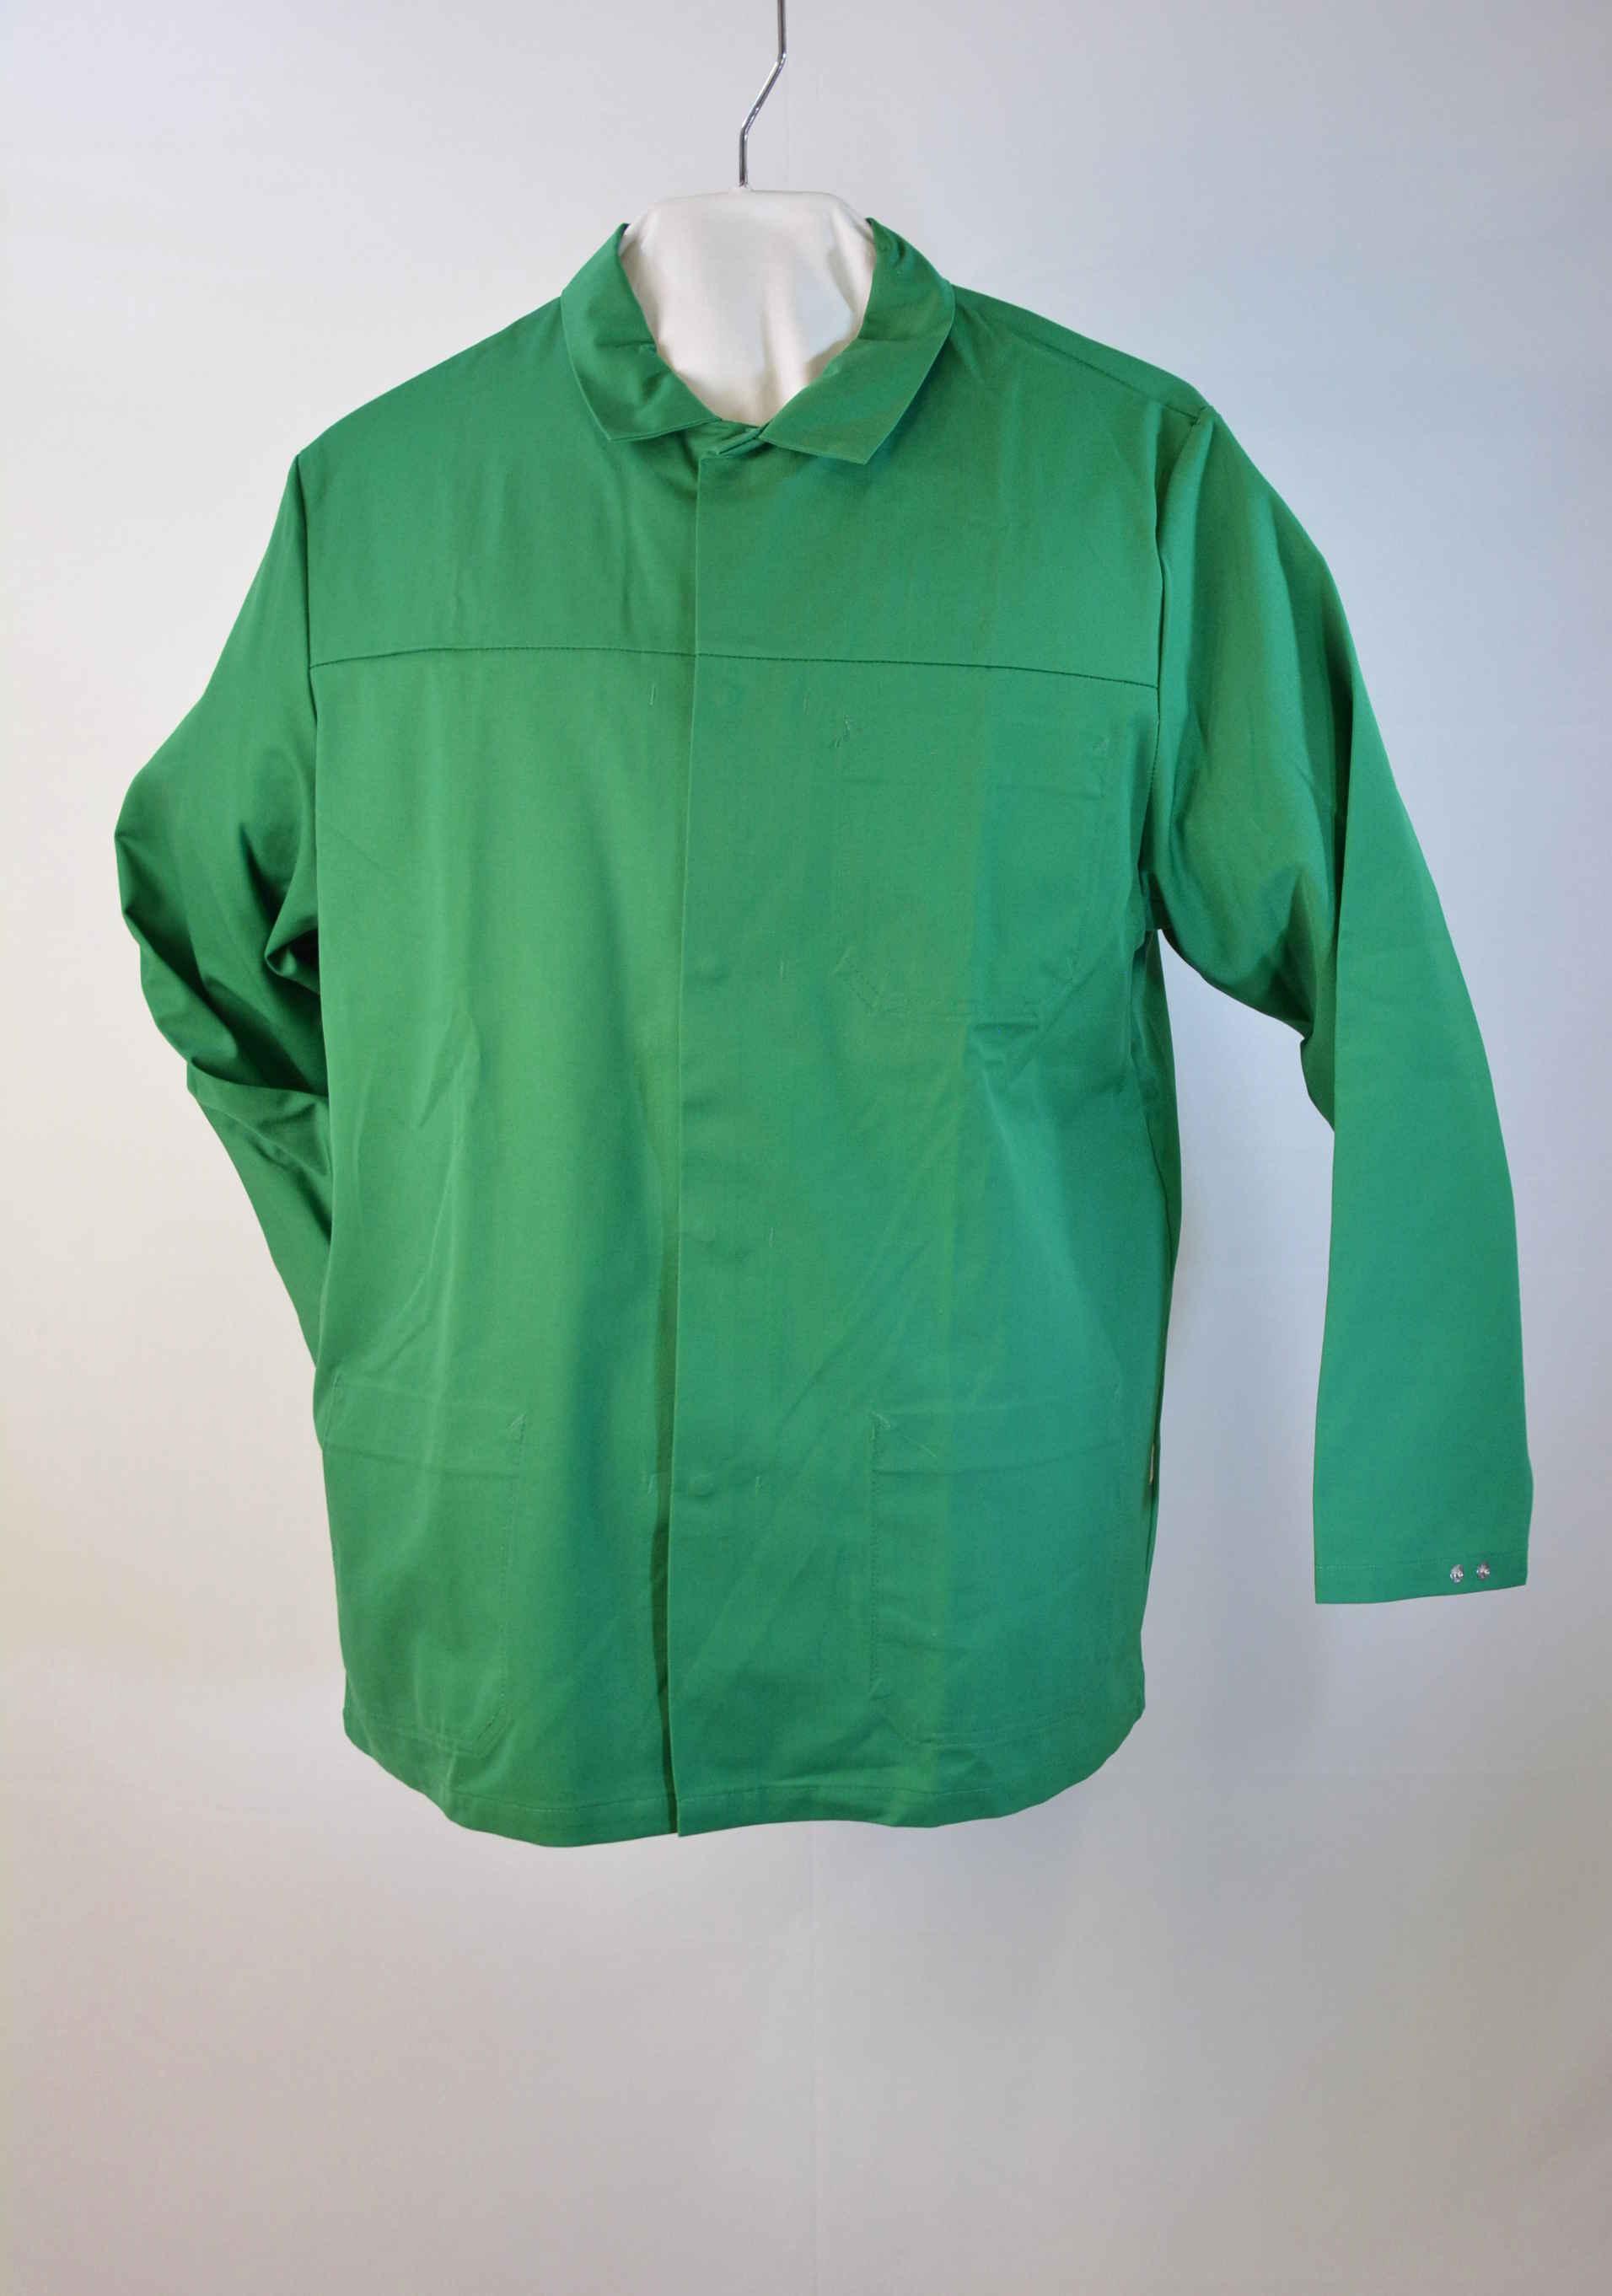 Arbeitsjacke mit Brustinnentasche in grün